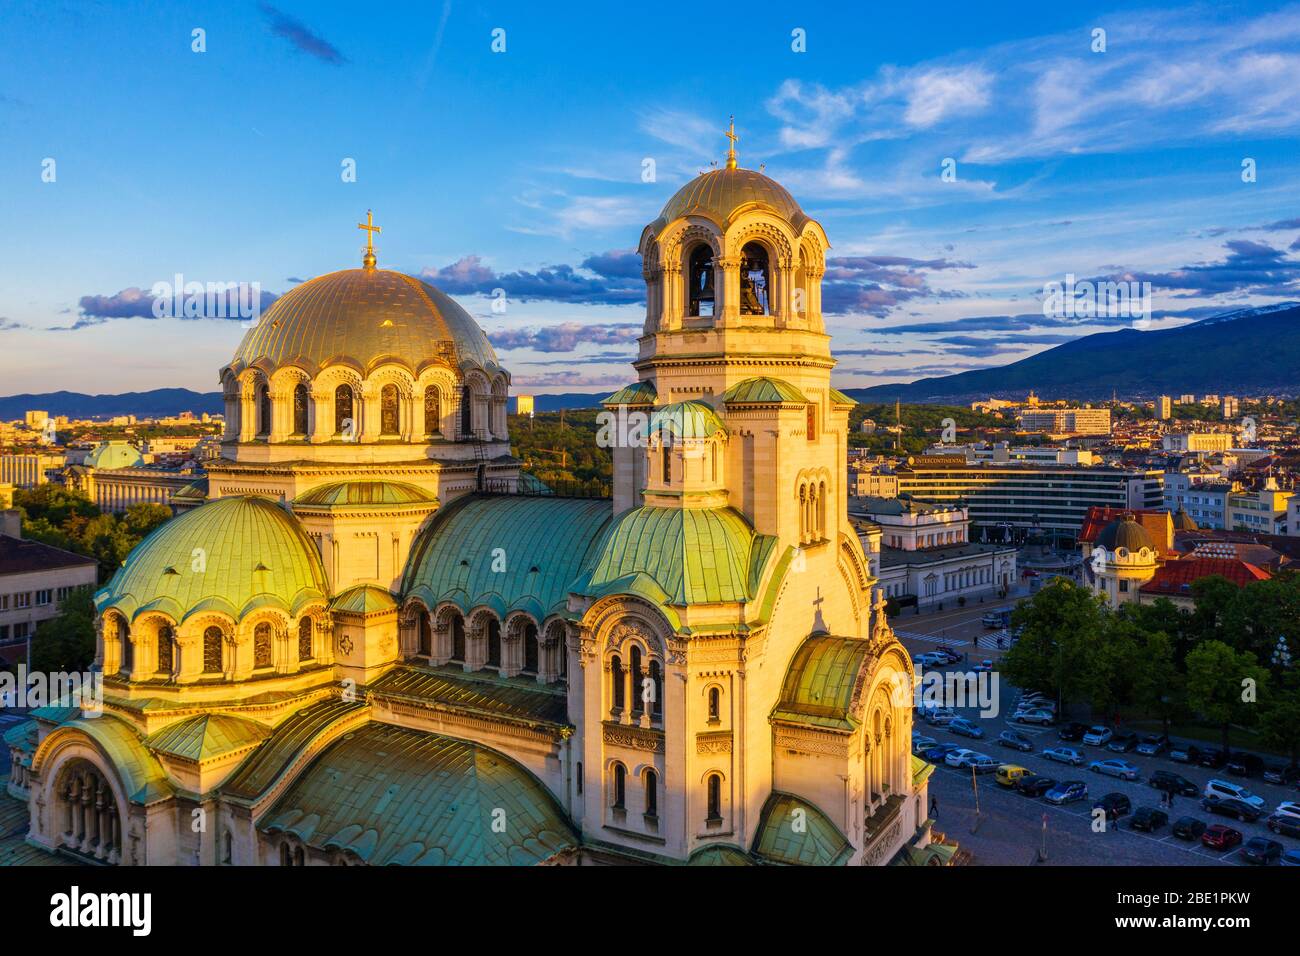 Europe, Bulgarie, Sofia, Alexander Nevsky cathédrale orthodoxe russe, vue aérienne Banque D'Images